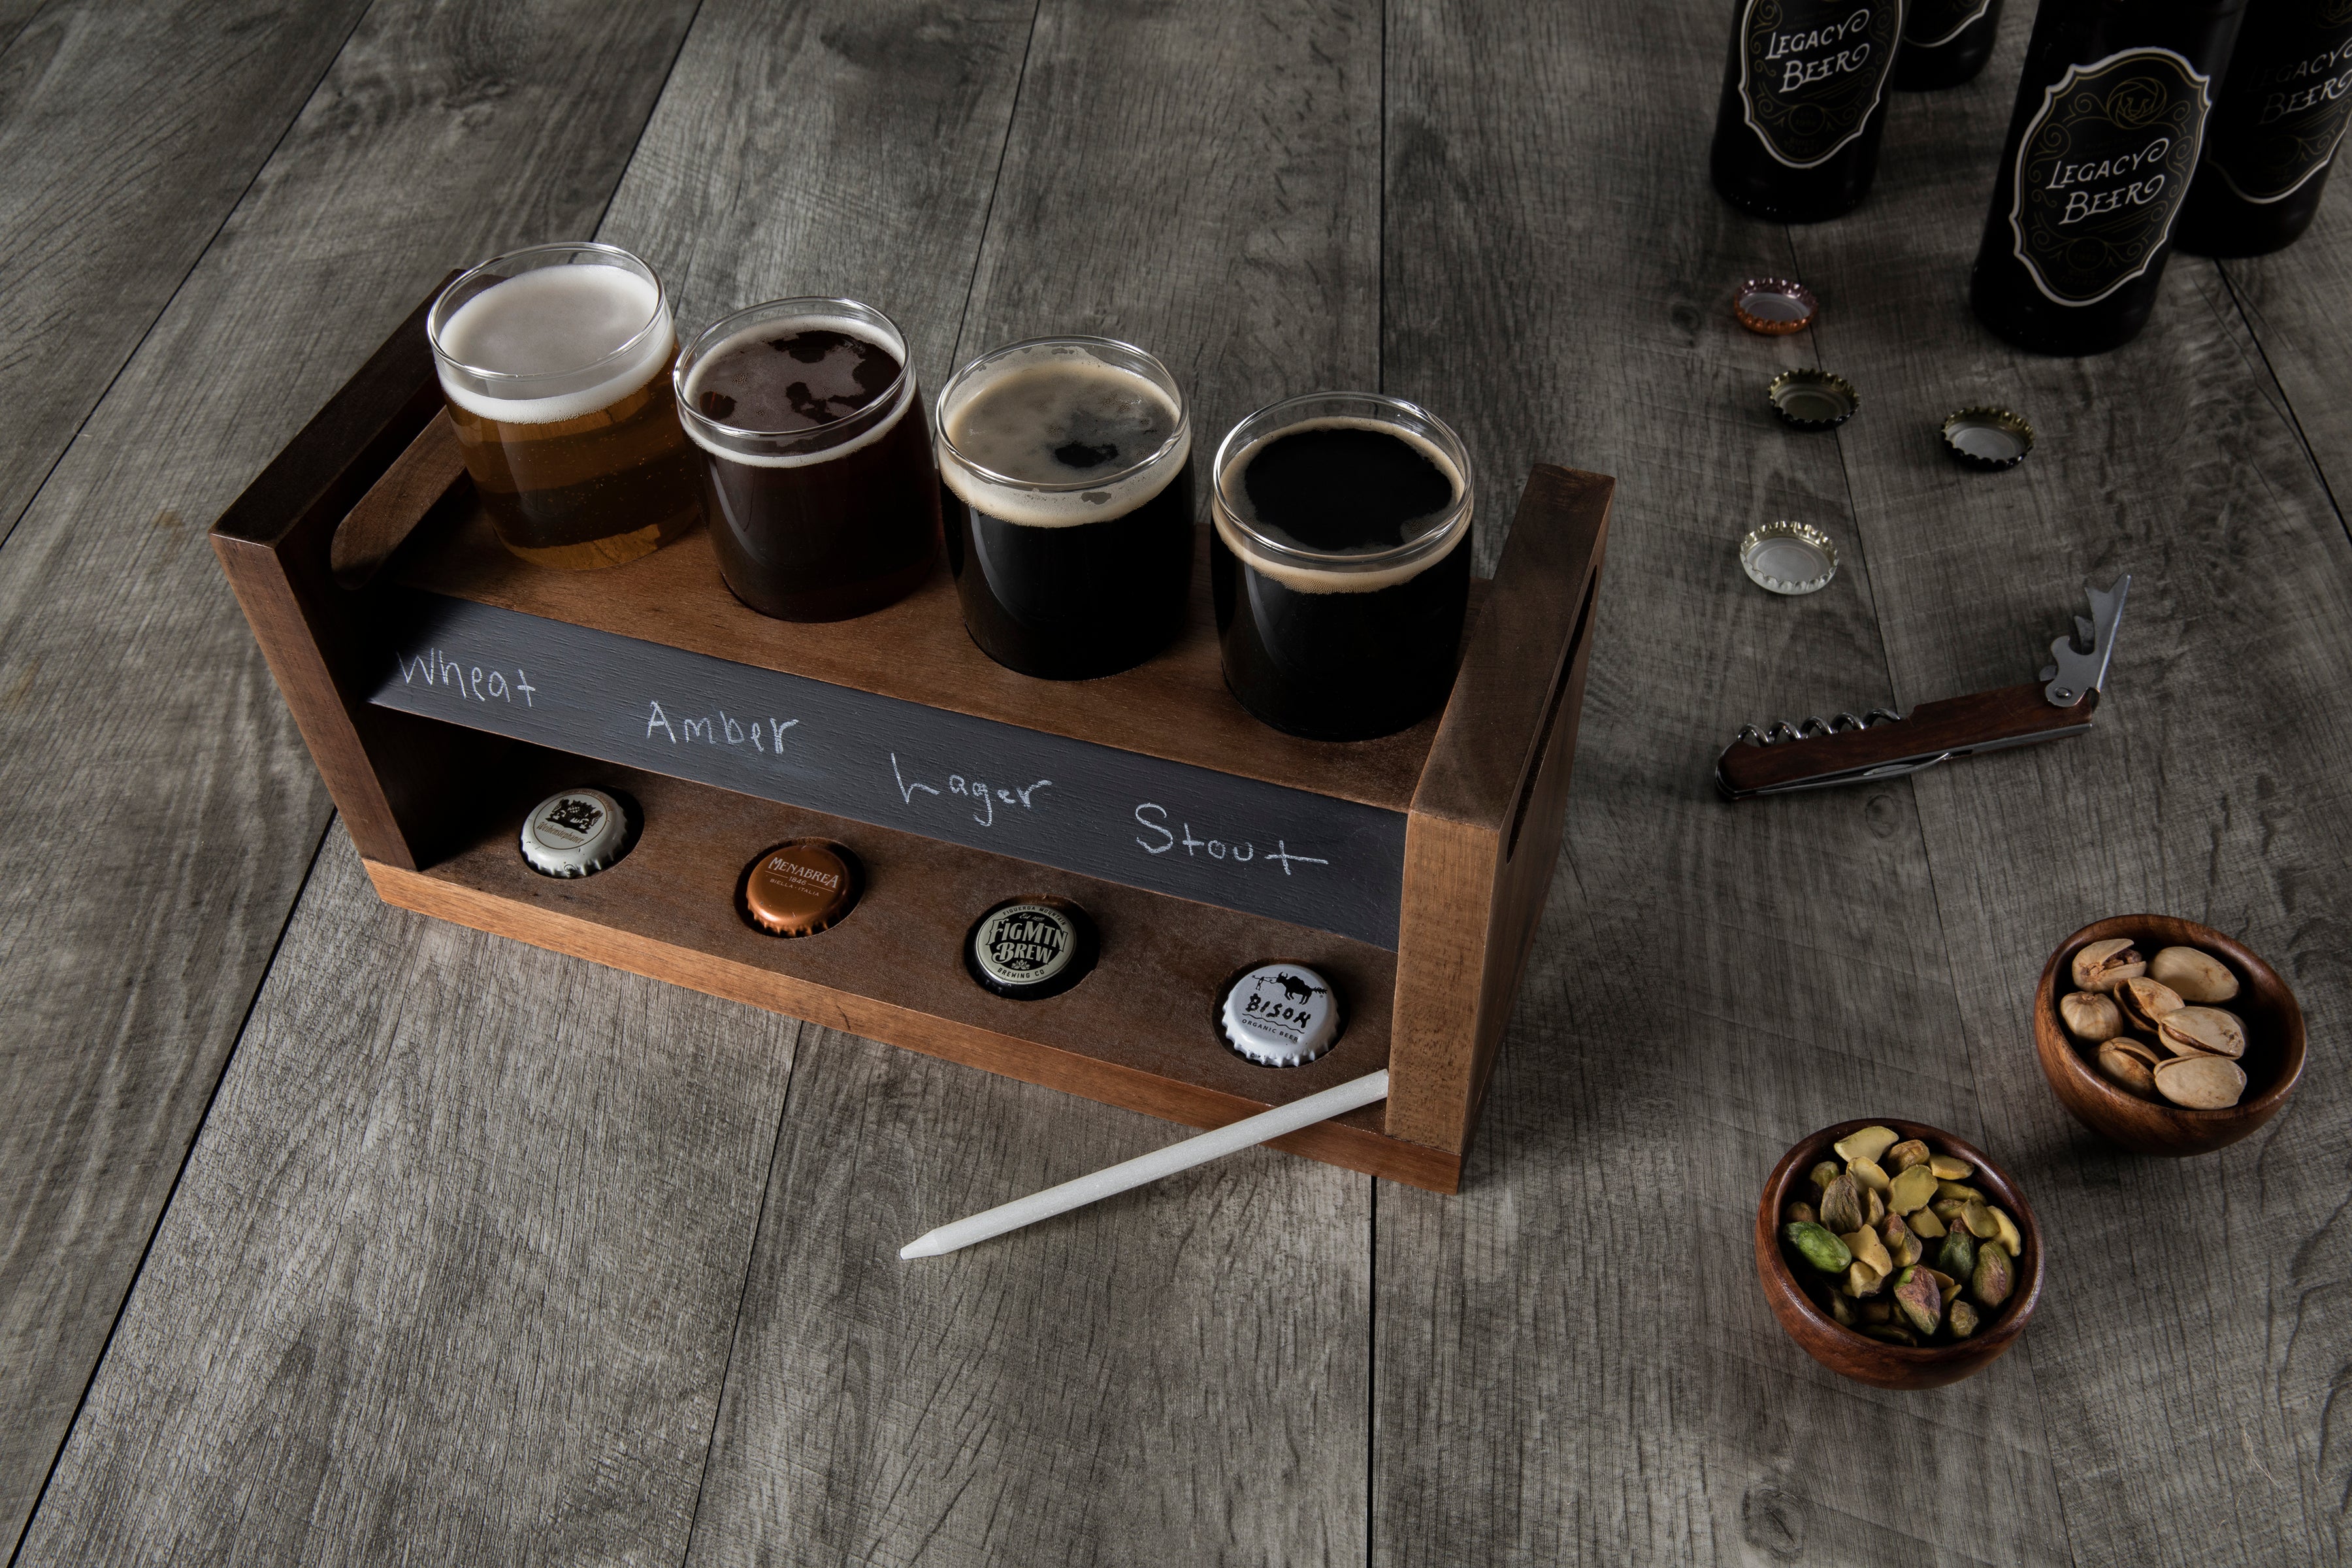 Cleveland Browns - Craft Beer Flight Beverage Sampler